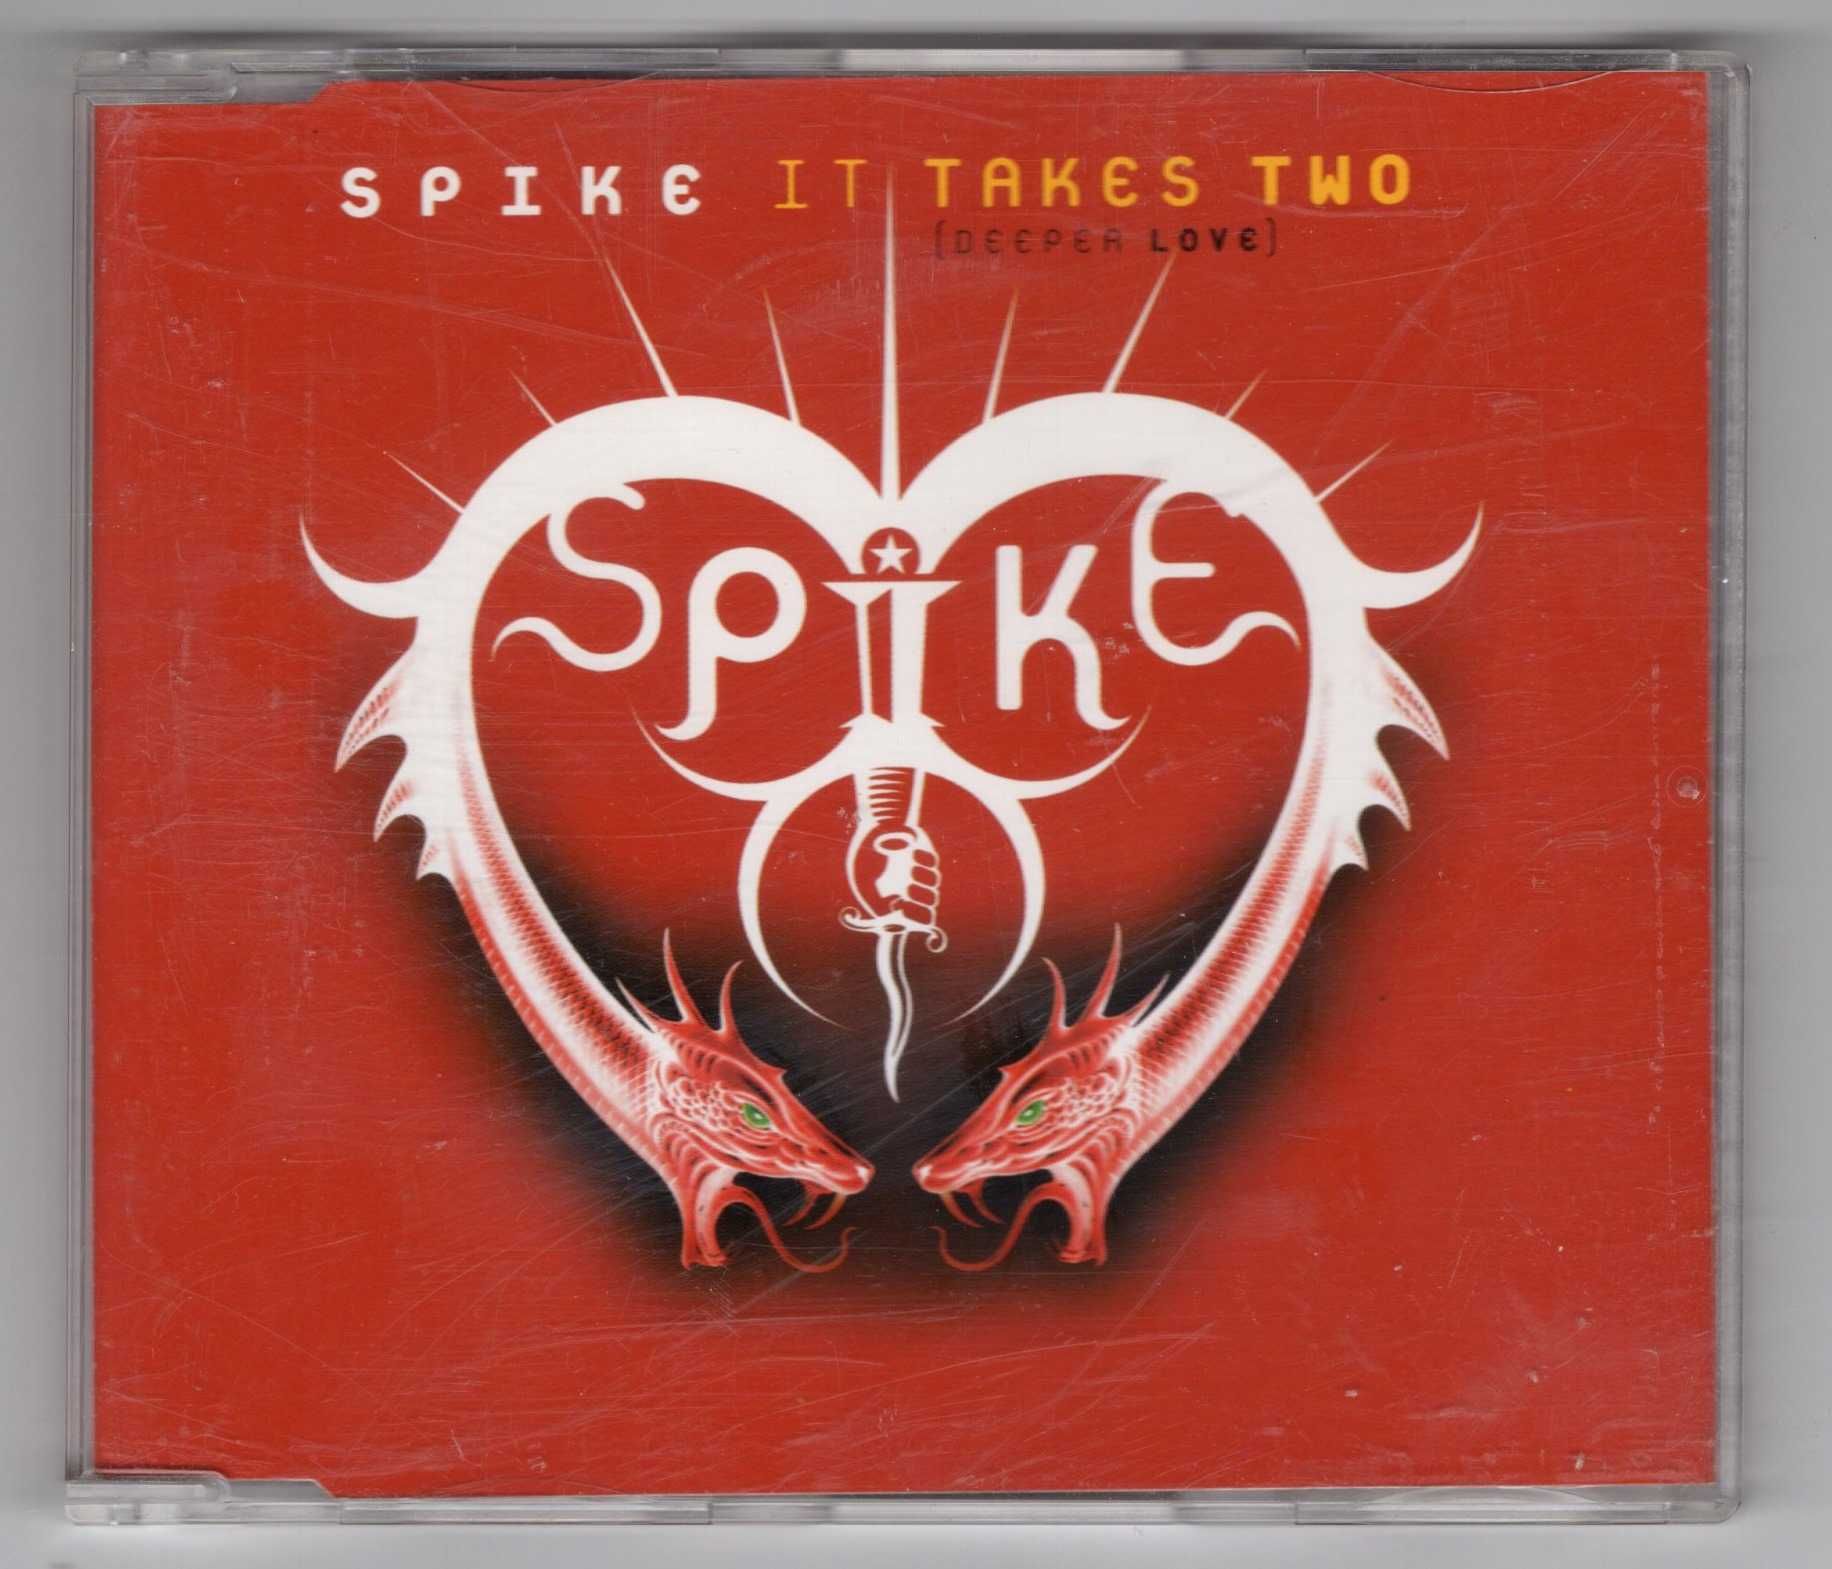 Spike - It Takes Two (Deeper Love) (CD, Singiel)